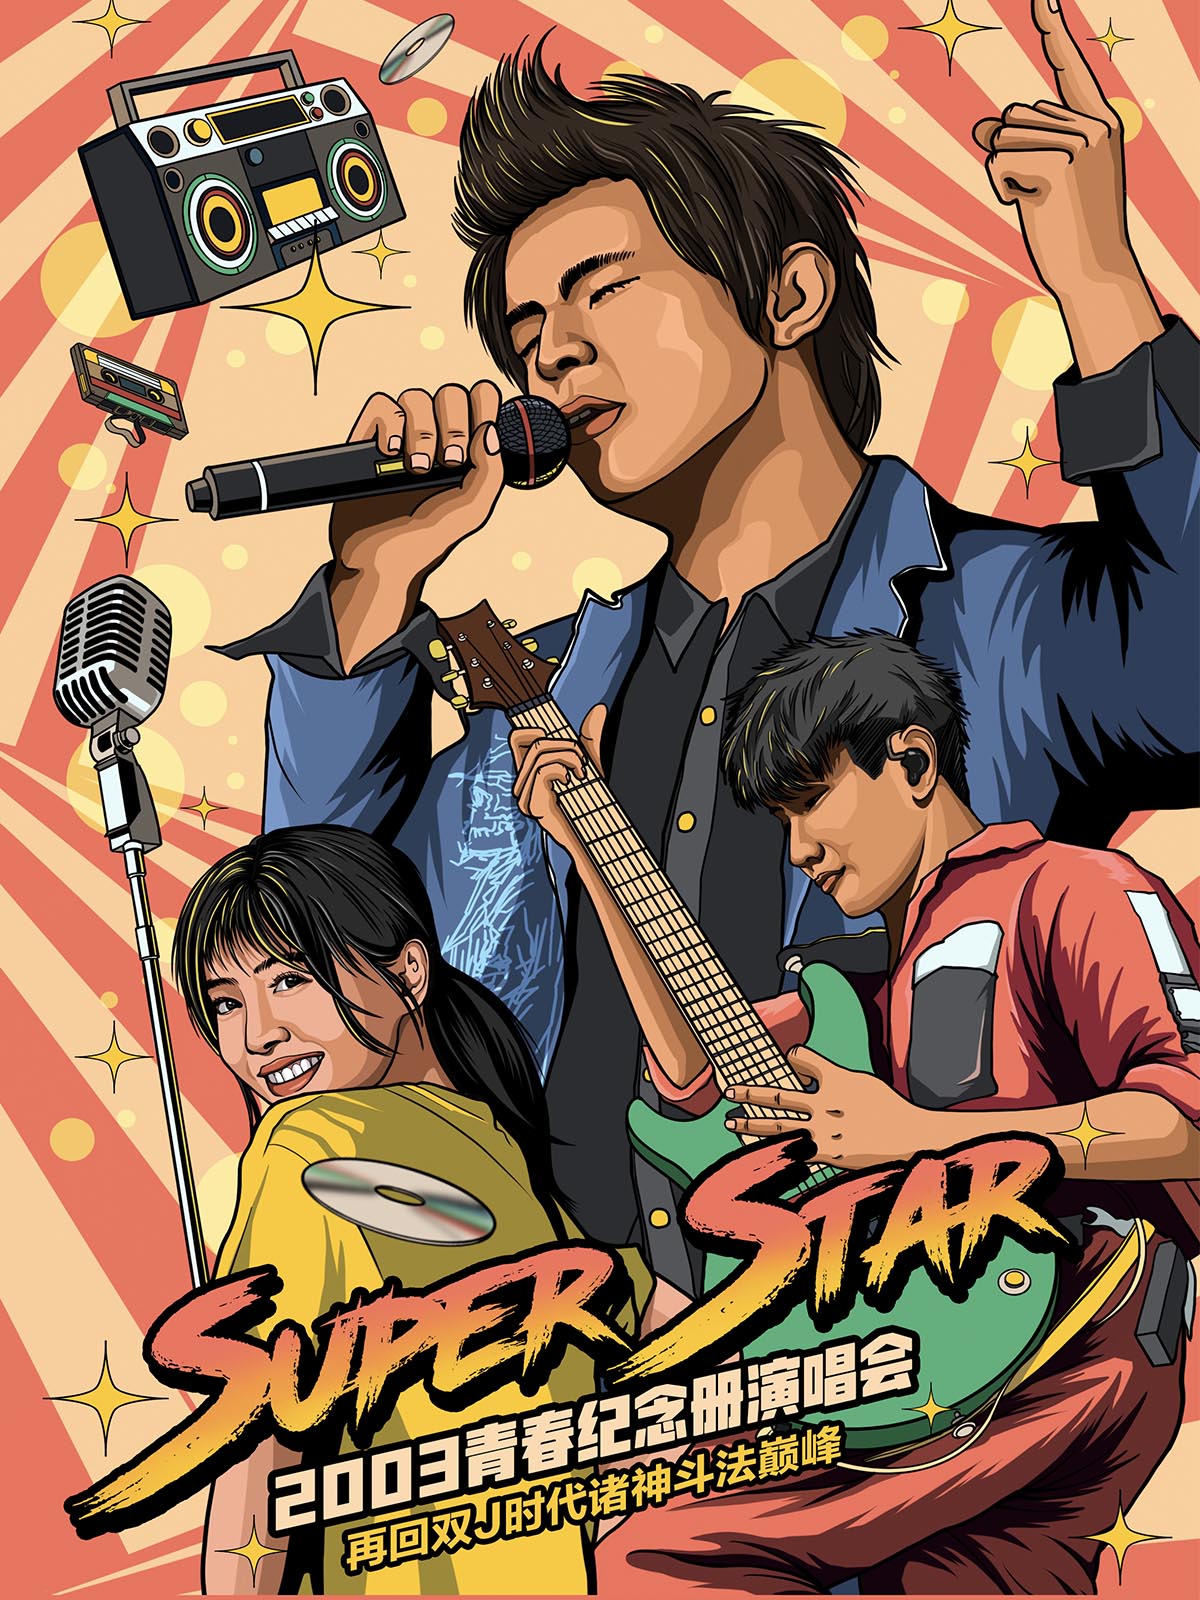 上海Super Star青春紀念冊演唱會